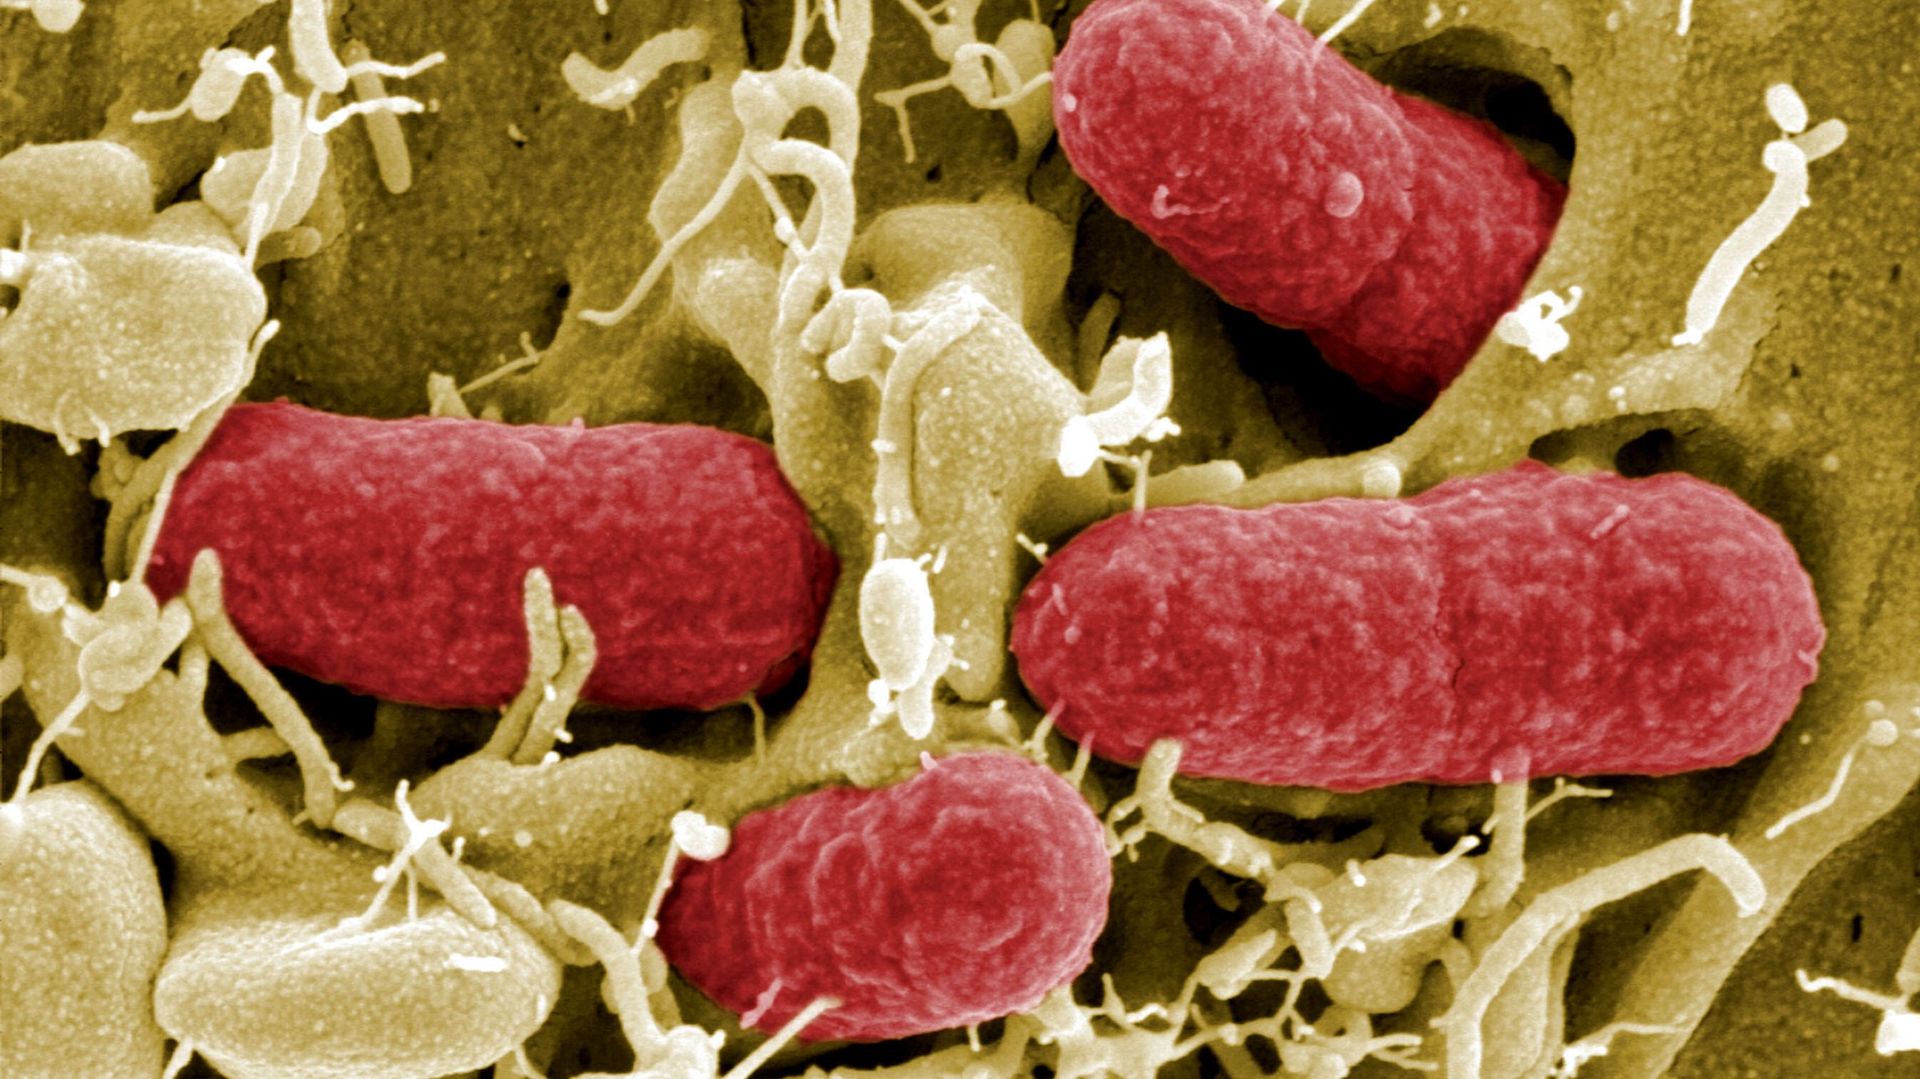 La bactérie escherichia coli enterohémorragique